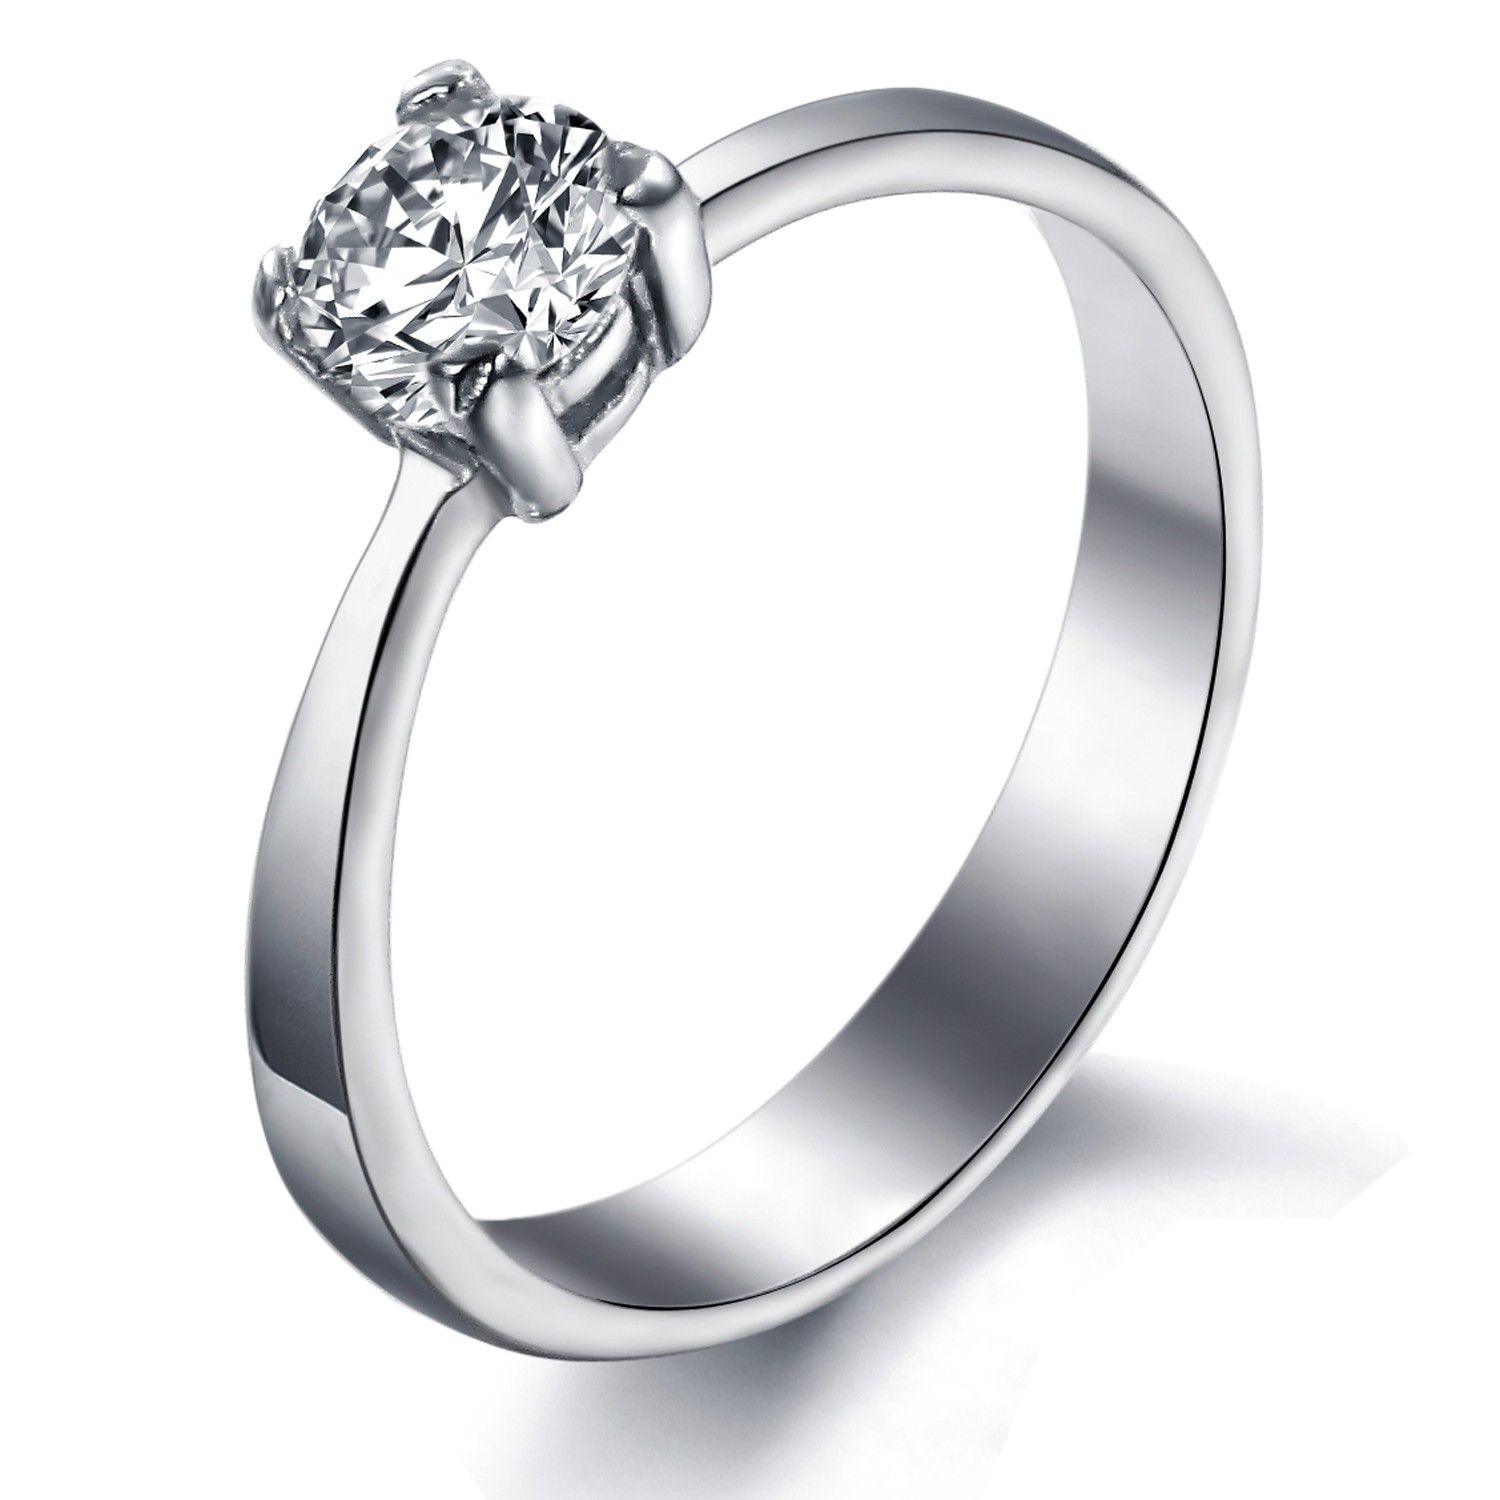 Titanium engagement wedding ring